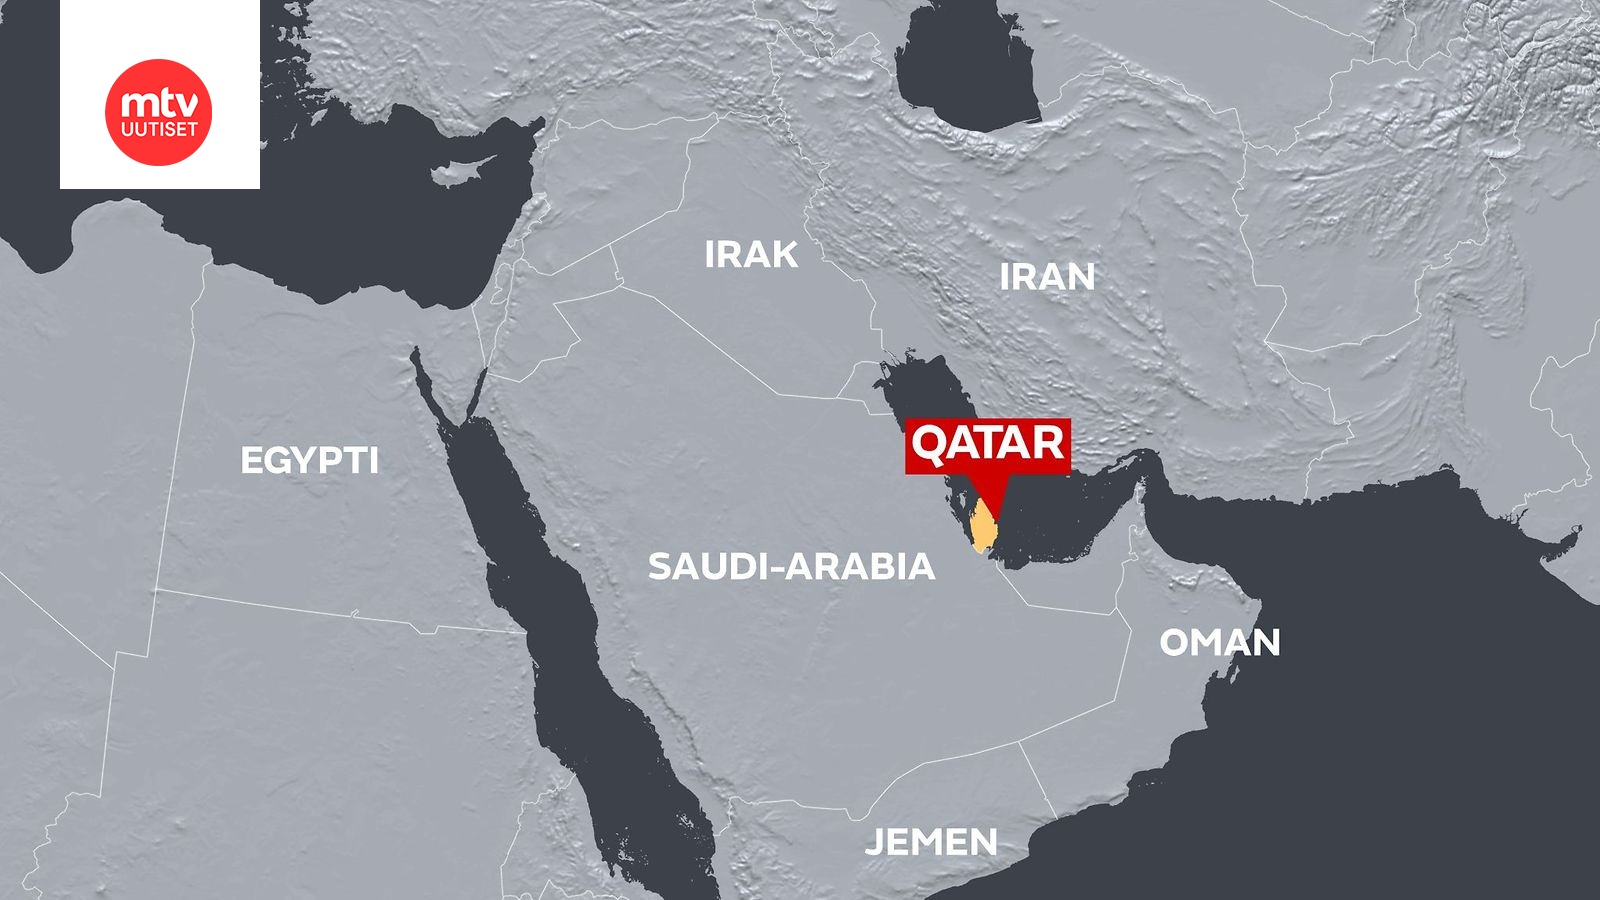 Kuwaitin emiiri matkustaa Saudi-Arabiaan keskustelemaan Qatarista -  